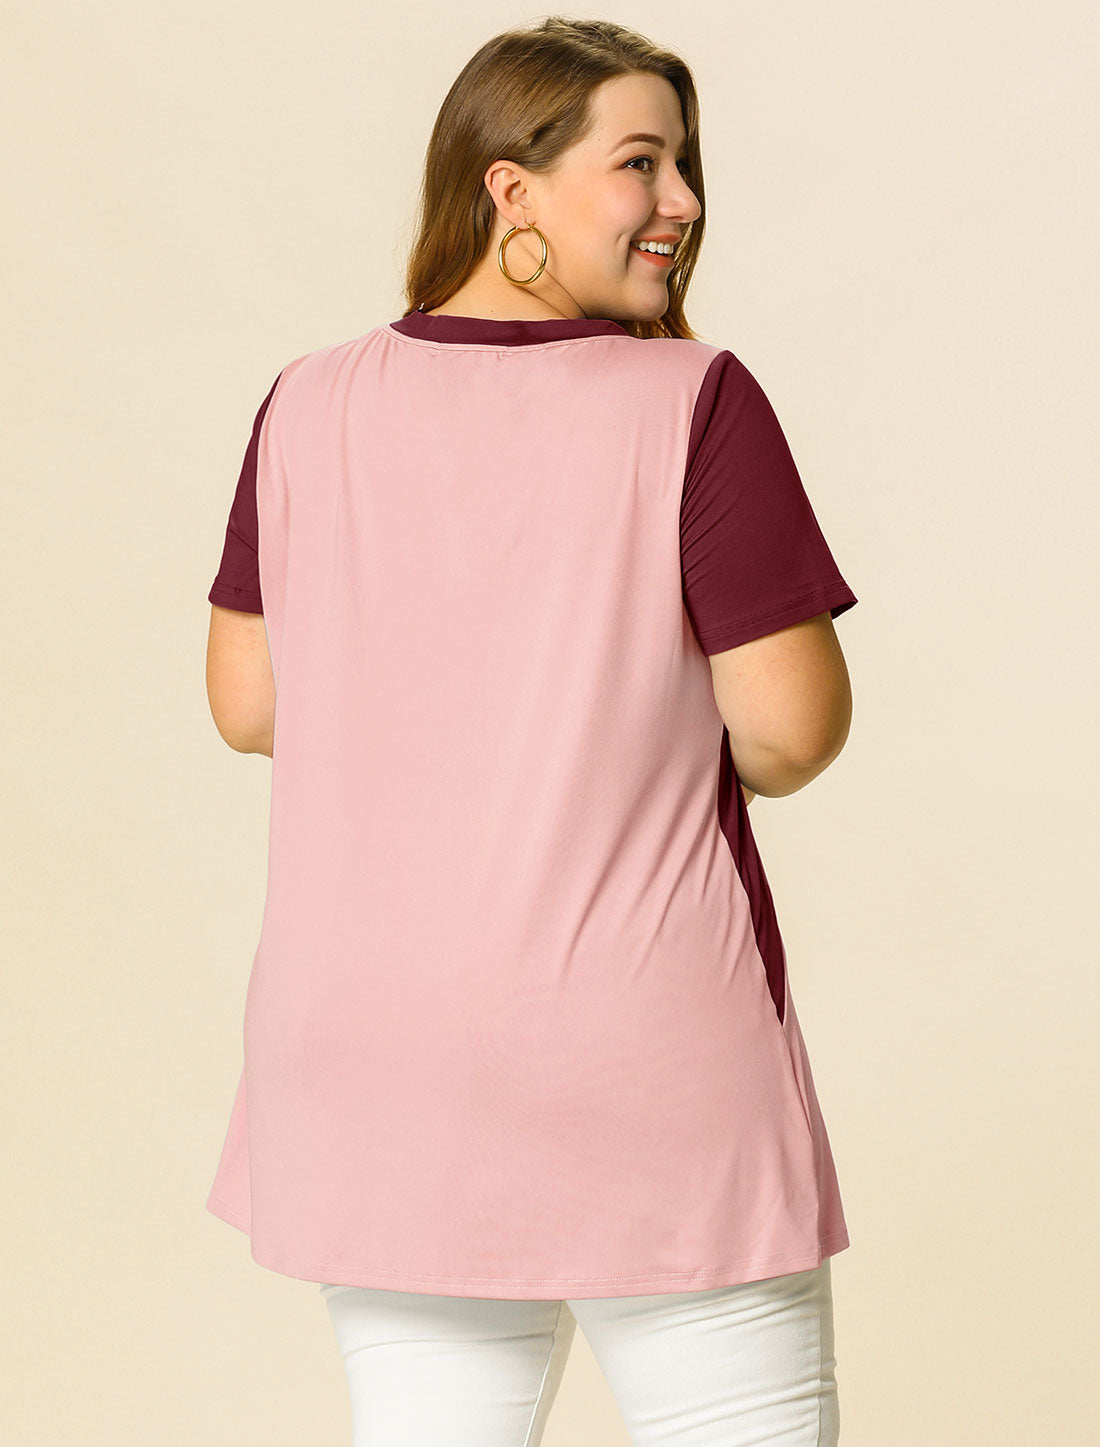 Bublédon Women's Plus Size Top Color Block Summer Blouse Short Sleeve Tunic Tops